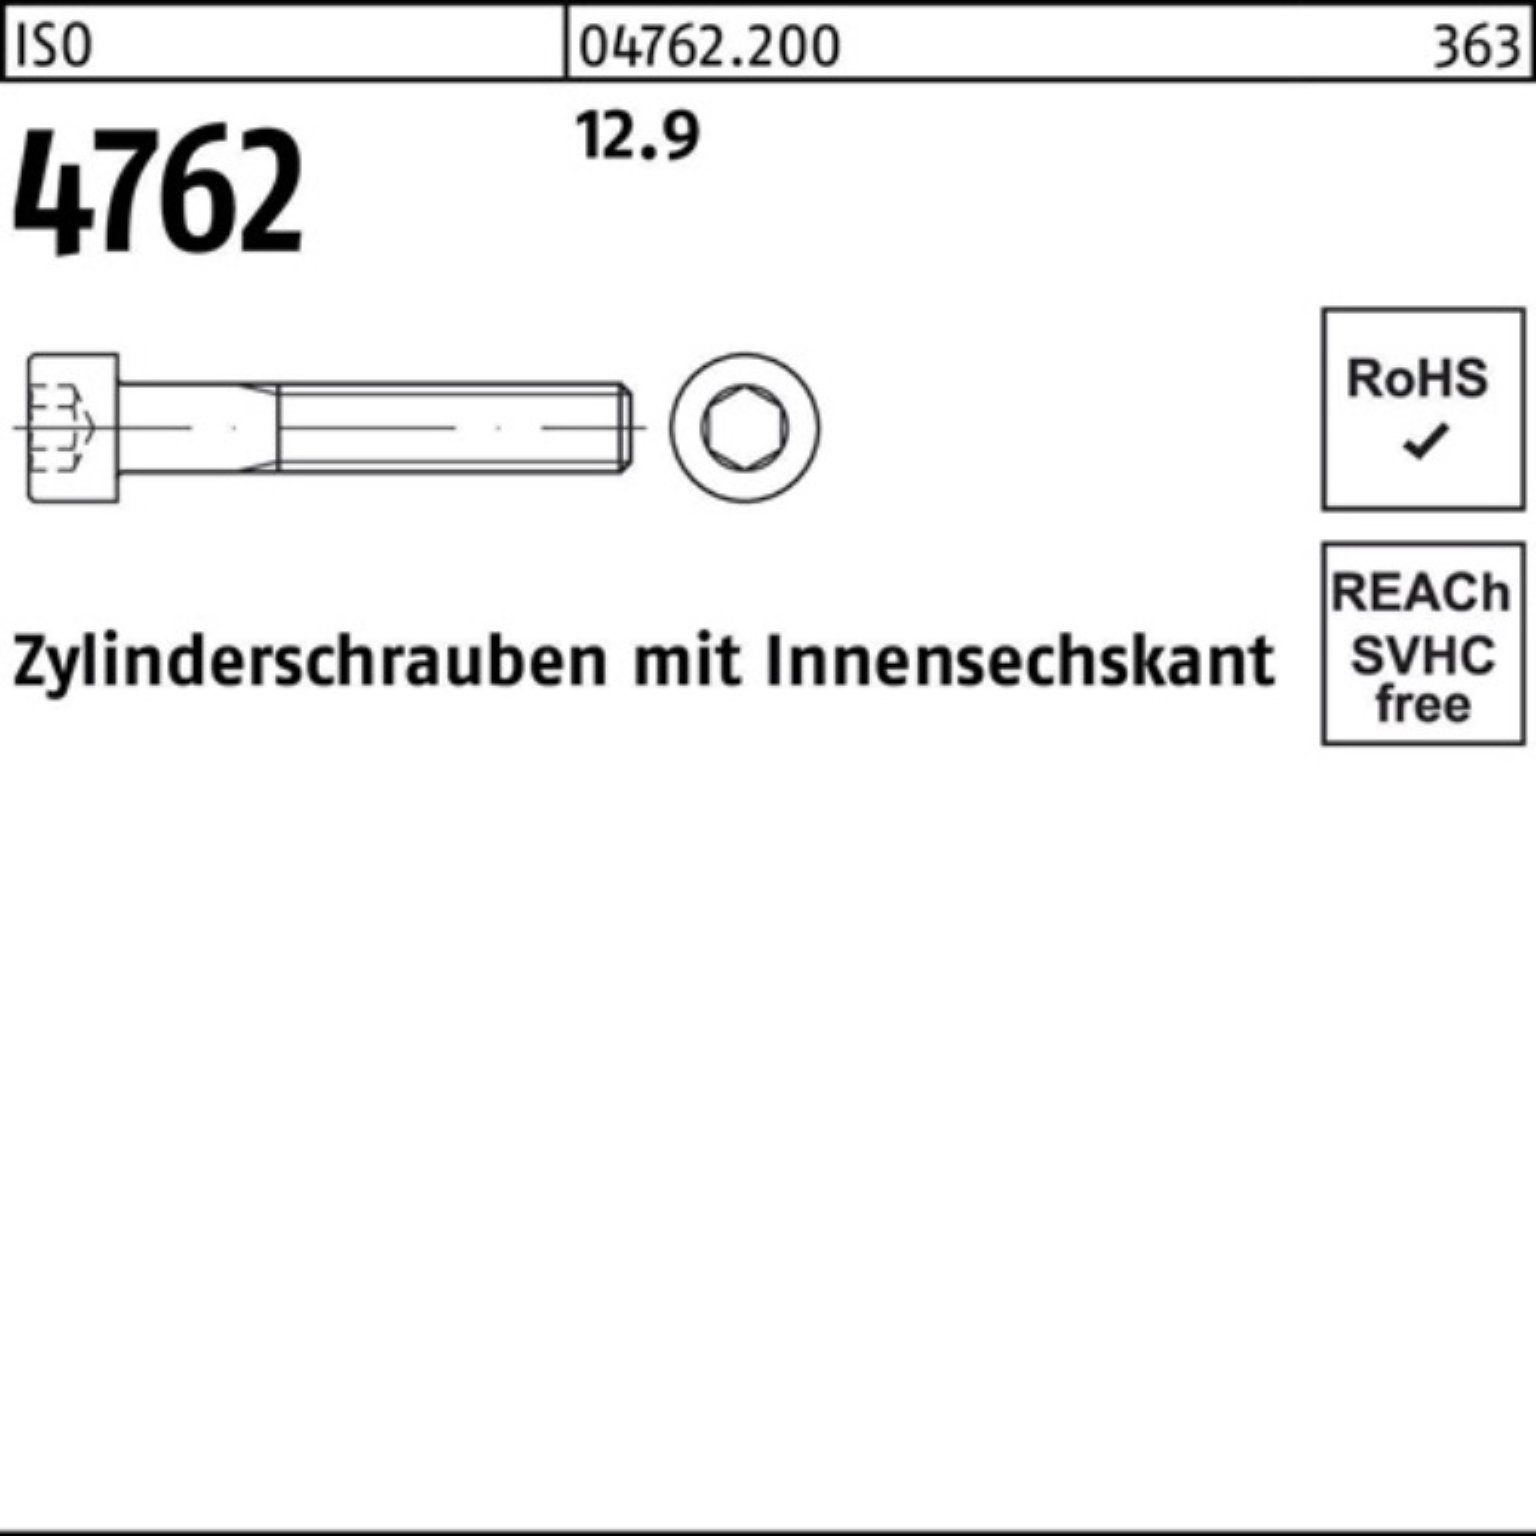 220 Zylinderschraube Zylinderschraube Innen-6kt ISO Reyher M39x Stück 4762 12.9 100er Pack 1